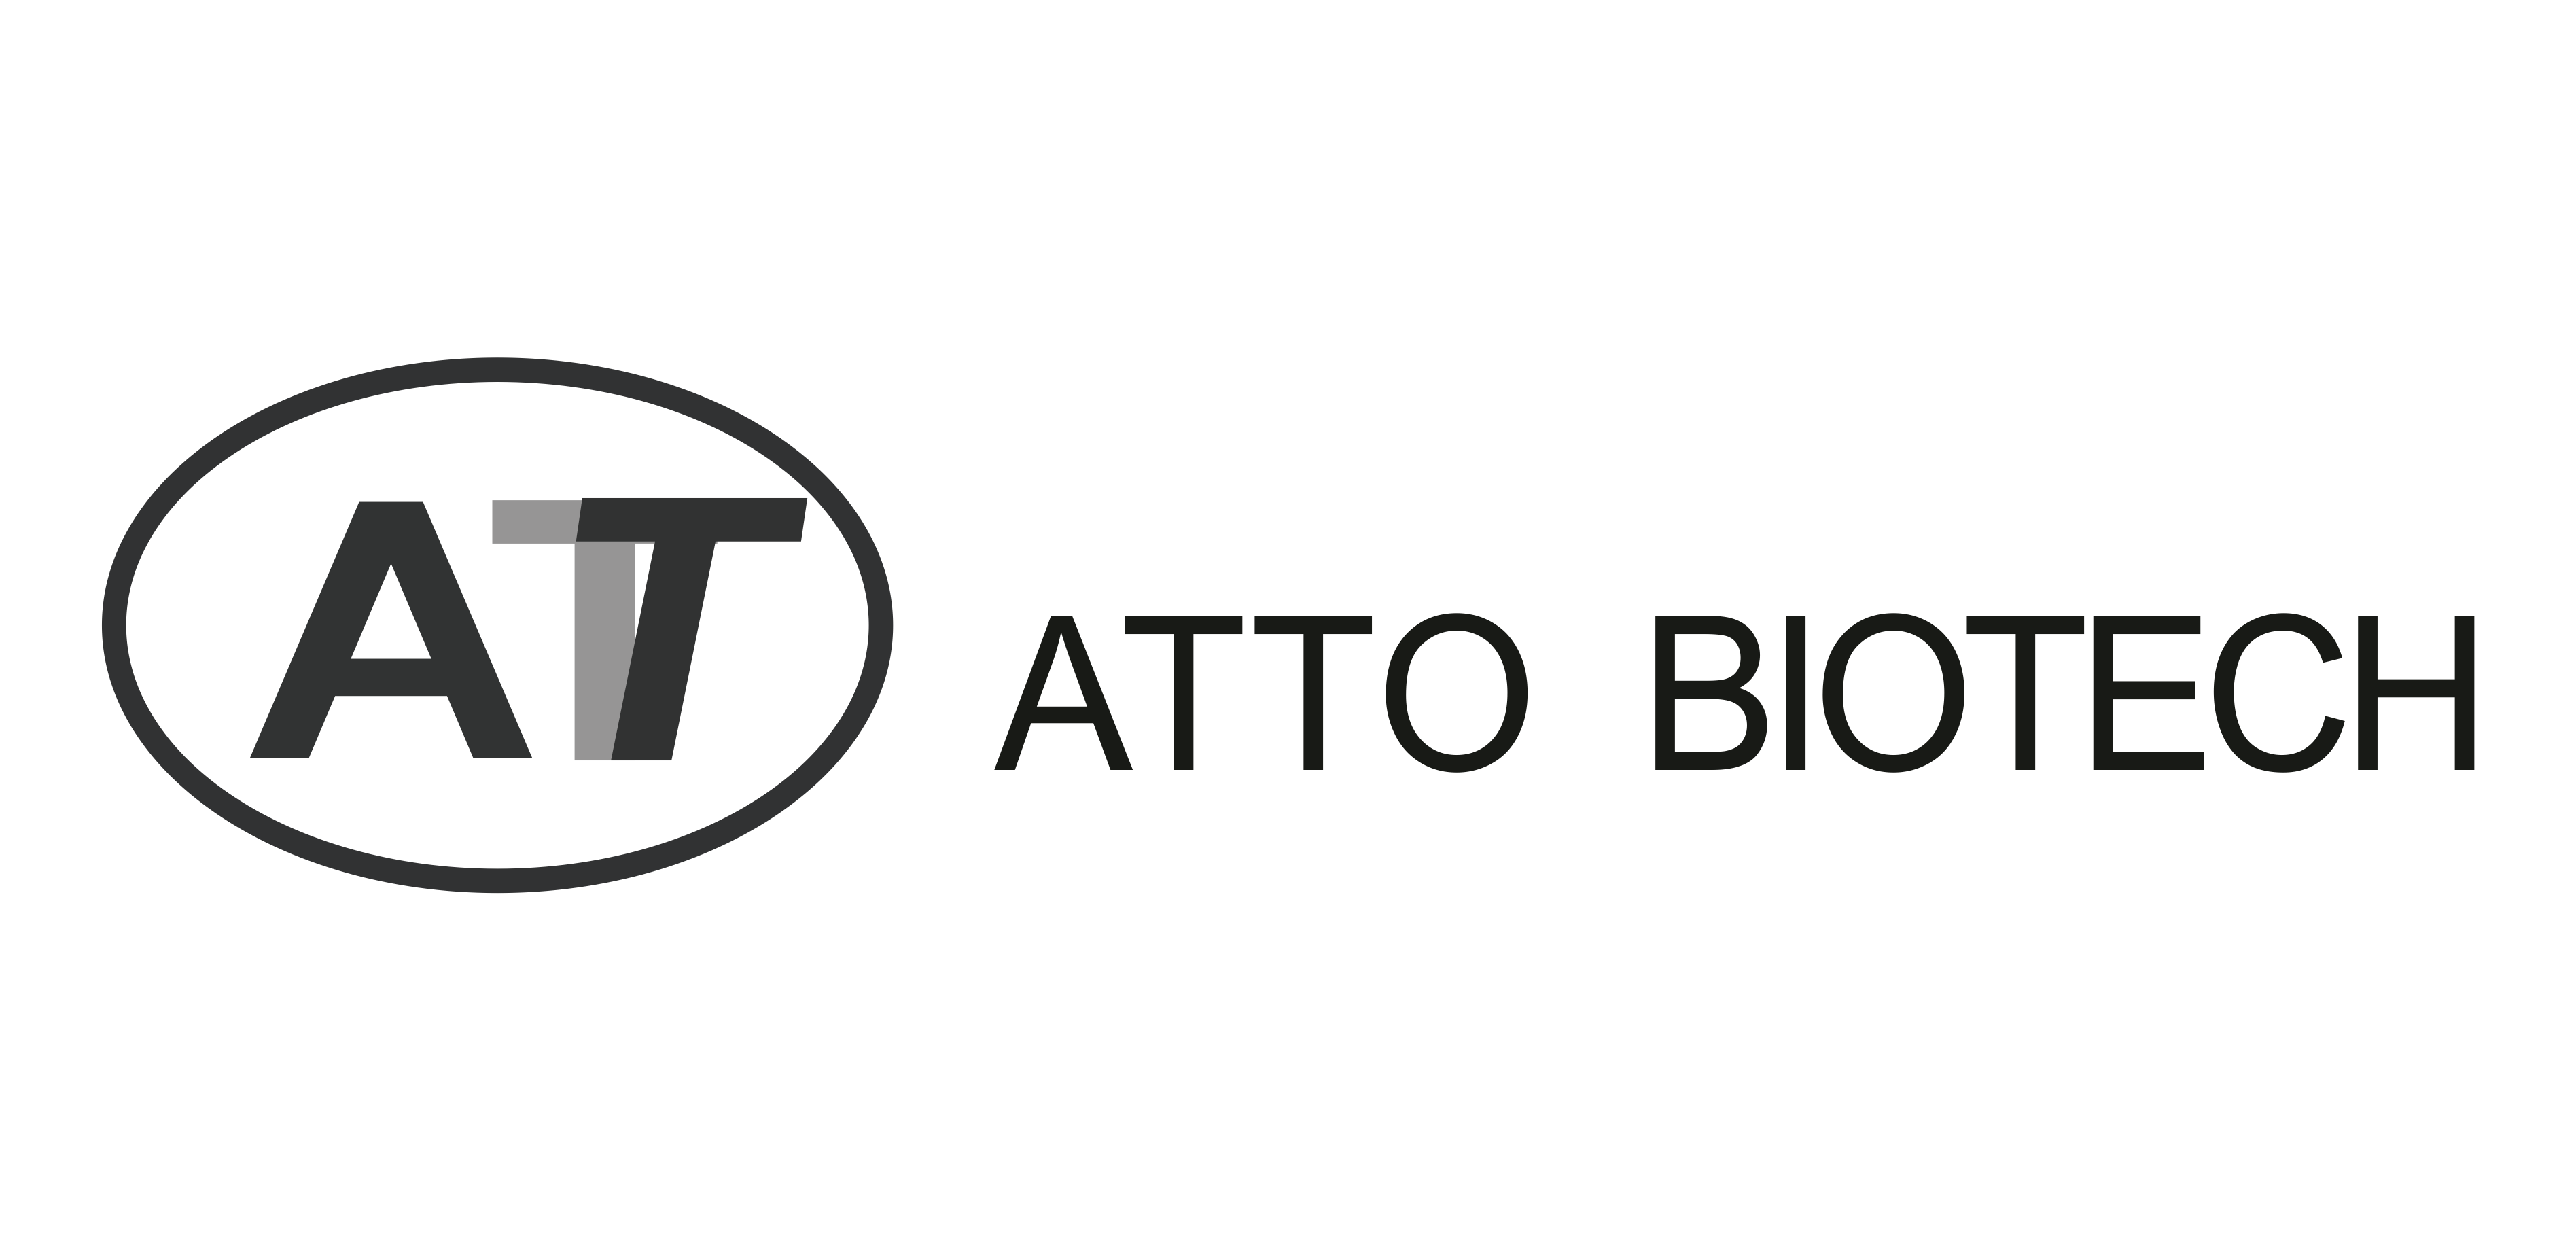 ATTO Biotech